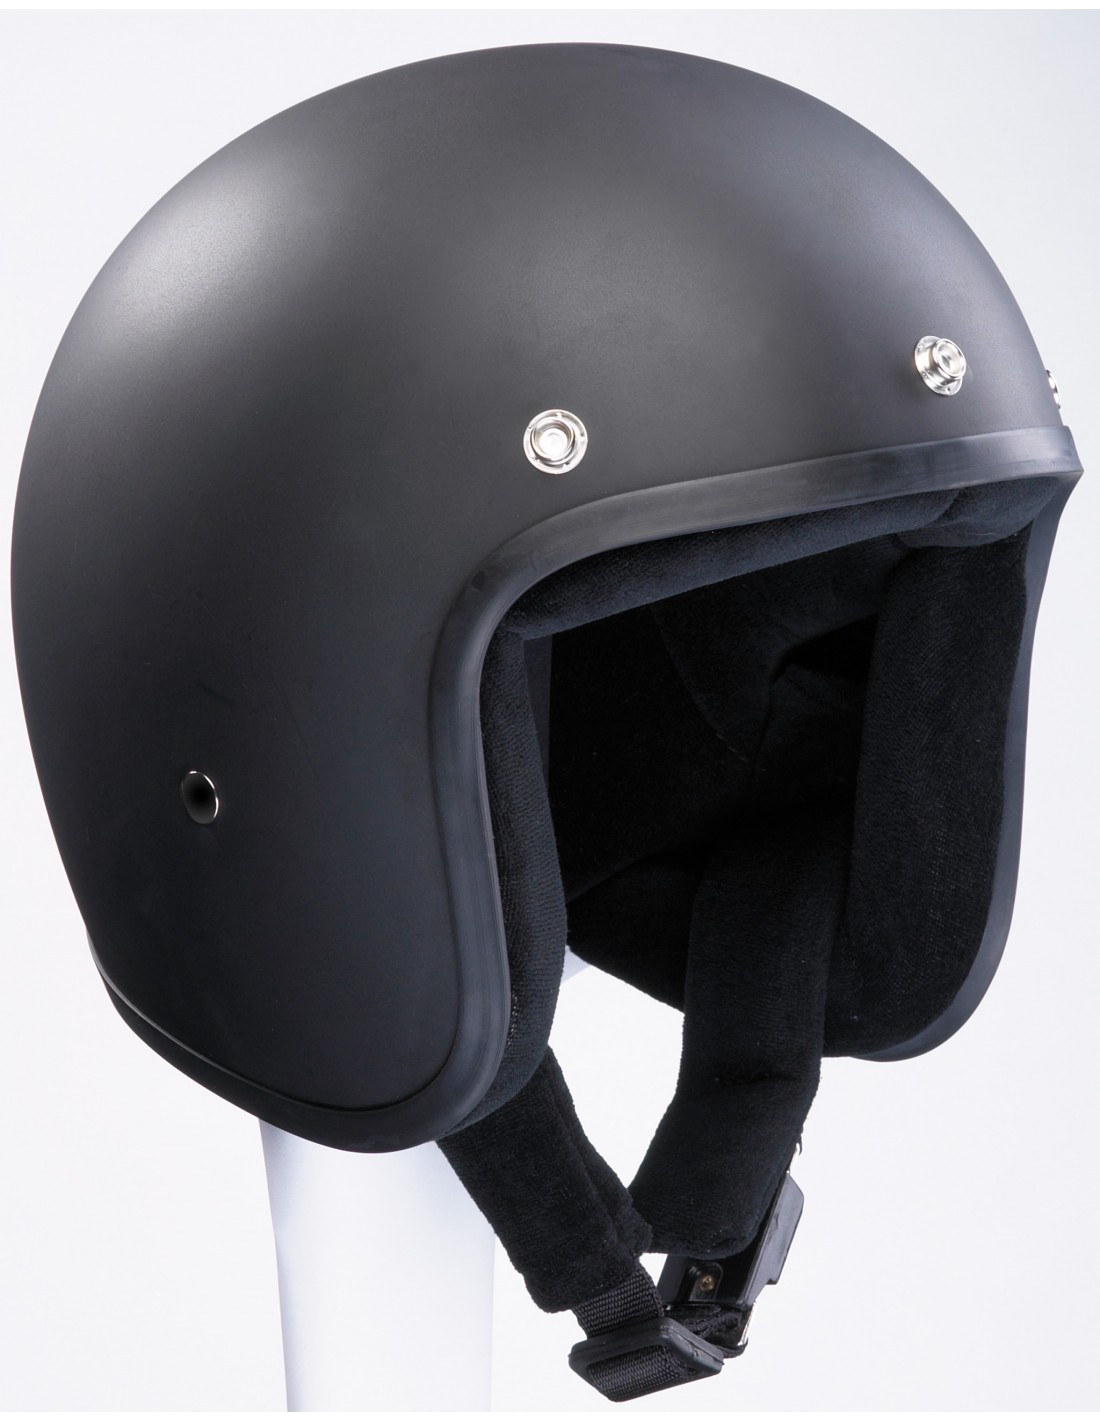 Motorcycle Helmet In Classic Design Bandit 777 Original Jet Helmet